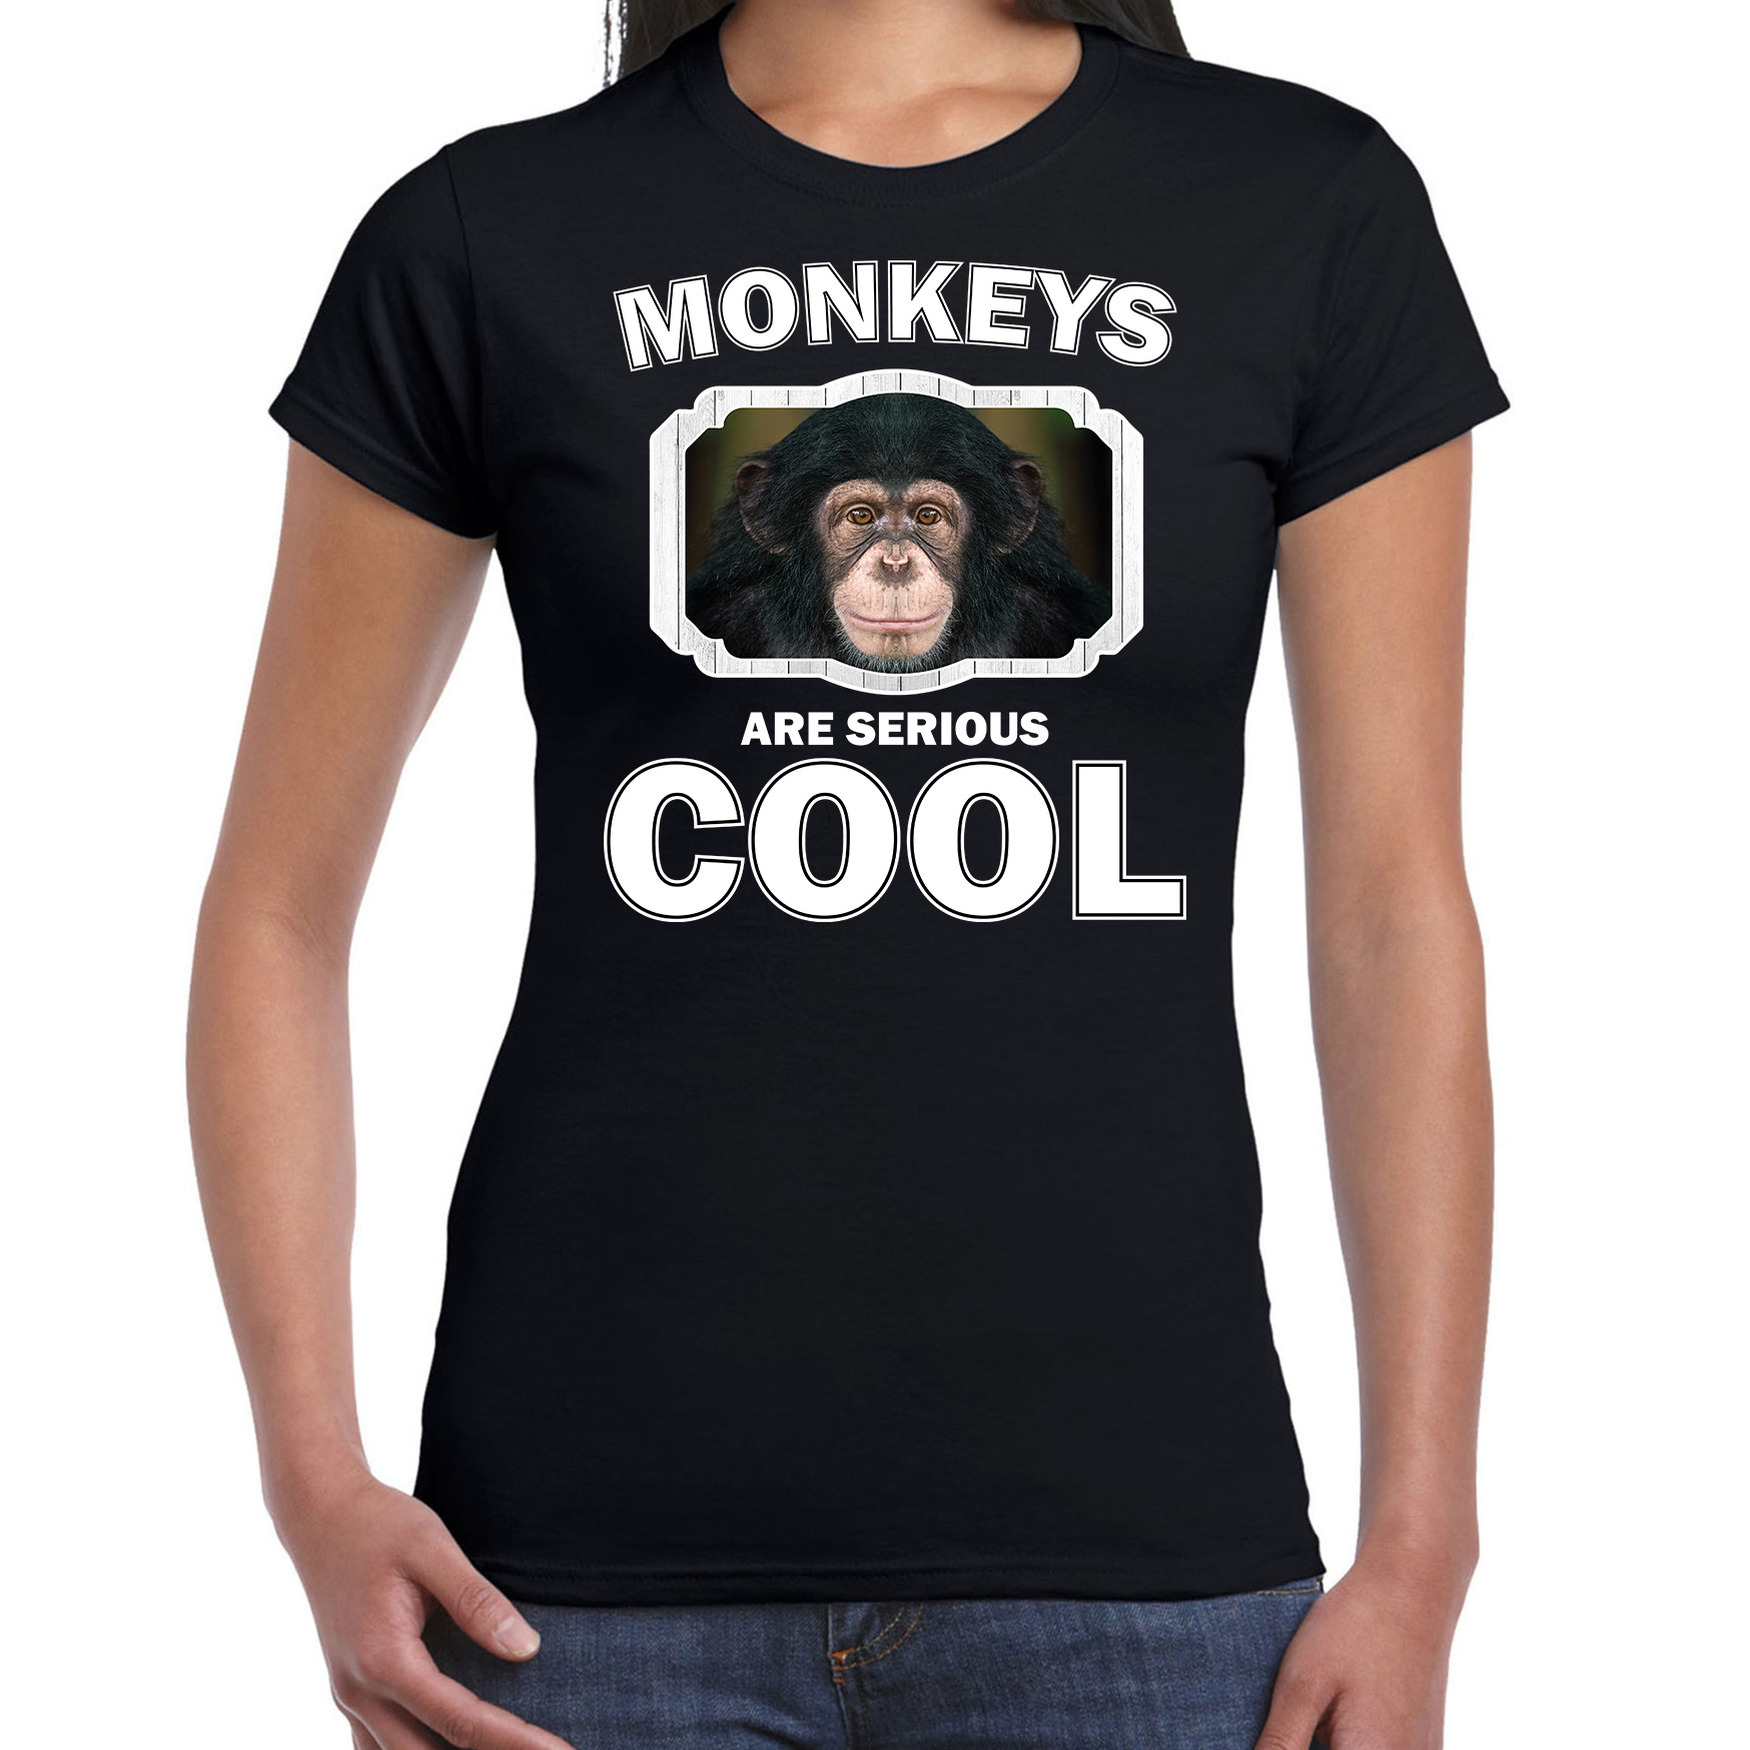 T-shirt monkeys are serious cool zwart dames - apen/ leuke chimpansee shirt